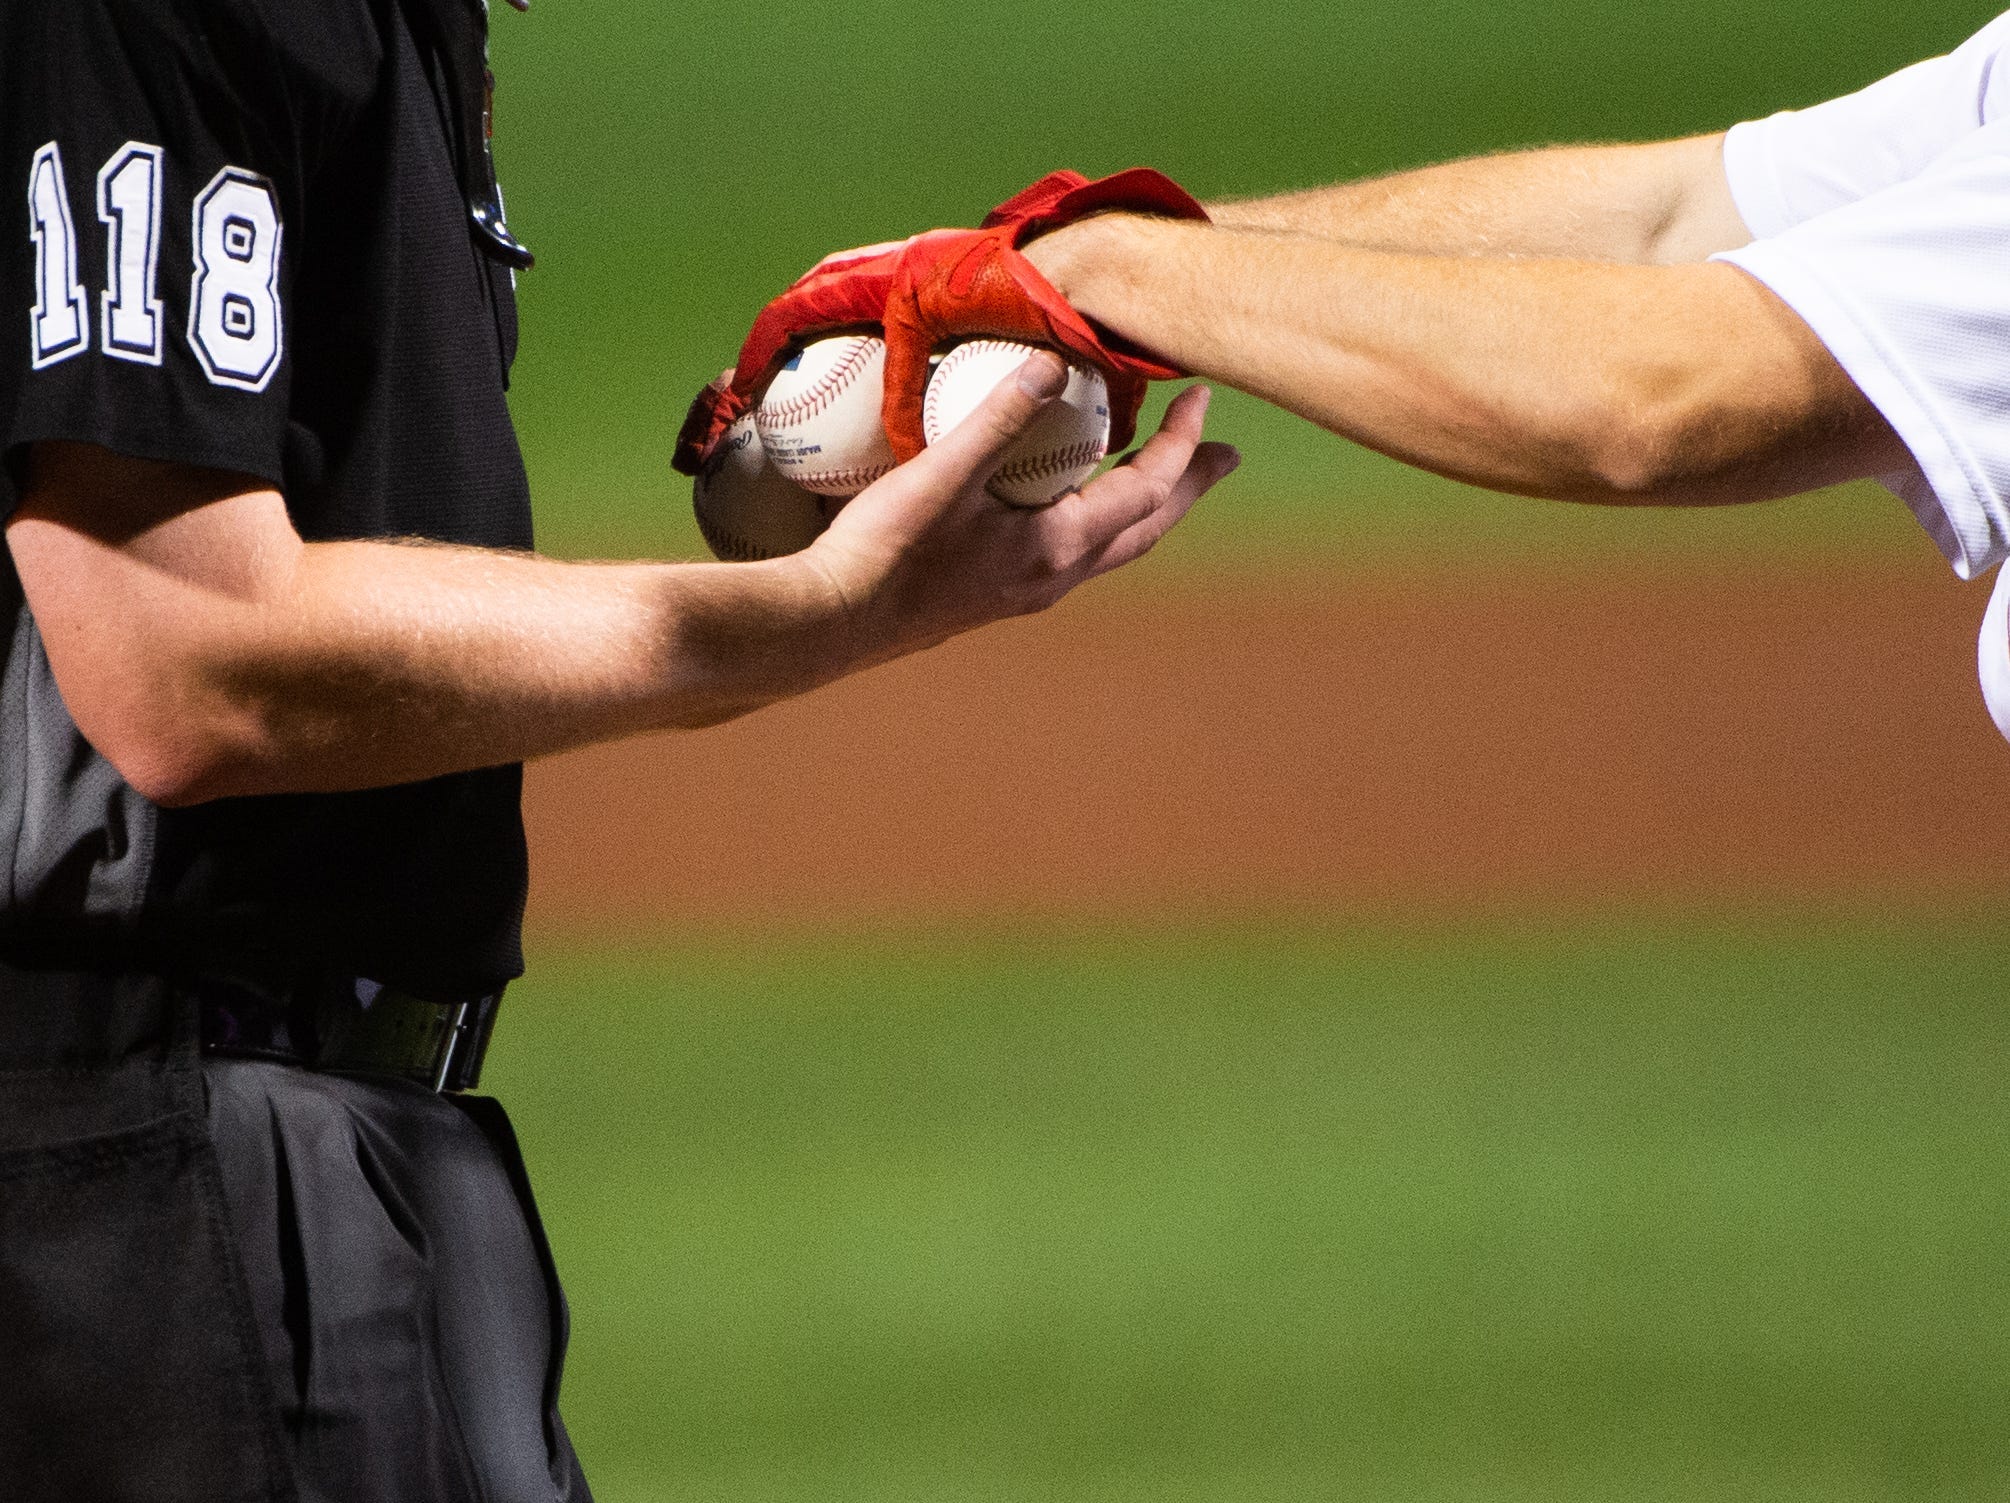 An MLB umpire is handed baseballs